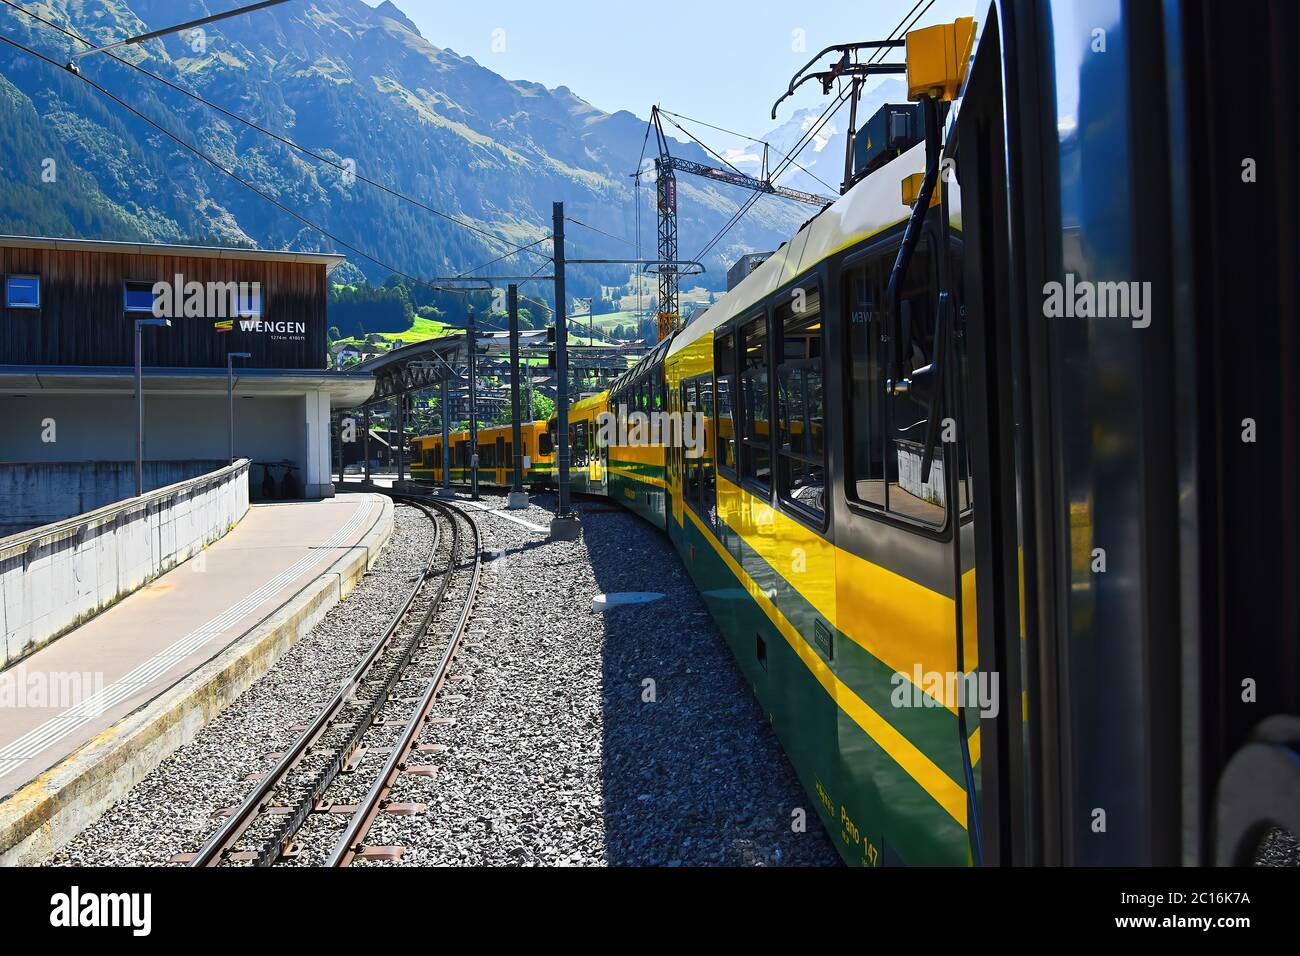 Bahnhof Wengen Teil des Berner Oberlandes Eisenbahn nach Grindelwald, Jungfrau Region, Berner Oberland, Schweiz. Stockfoto